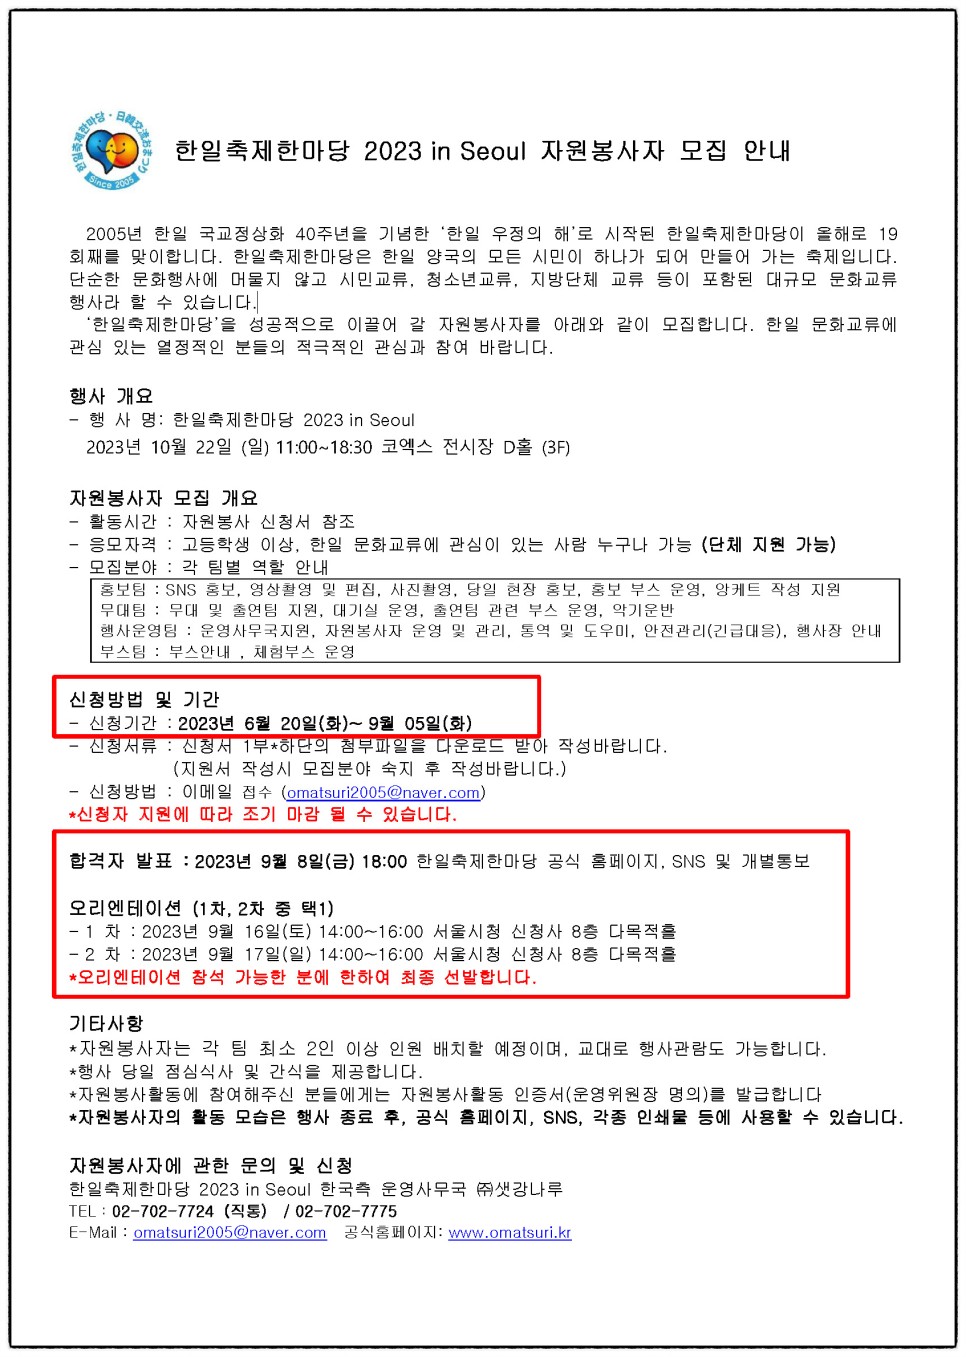 한일축제한마당 2023 in Seoul 개최 일정 및 자원봉사자 모집 소식